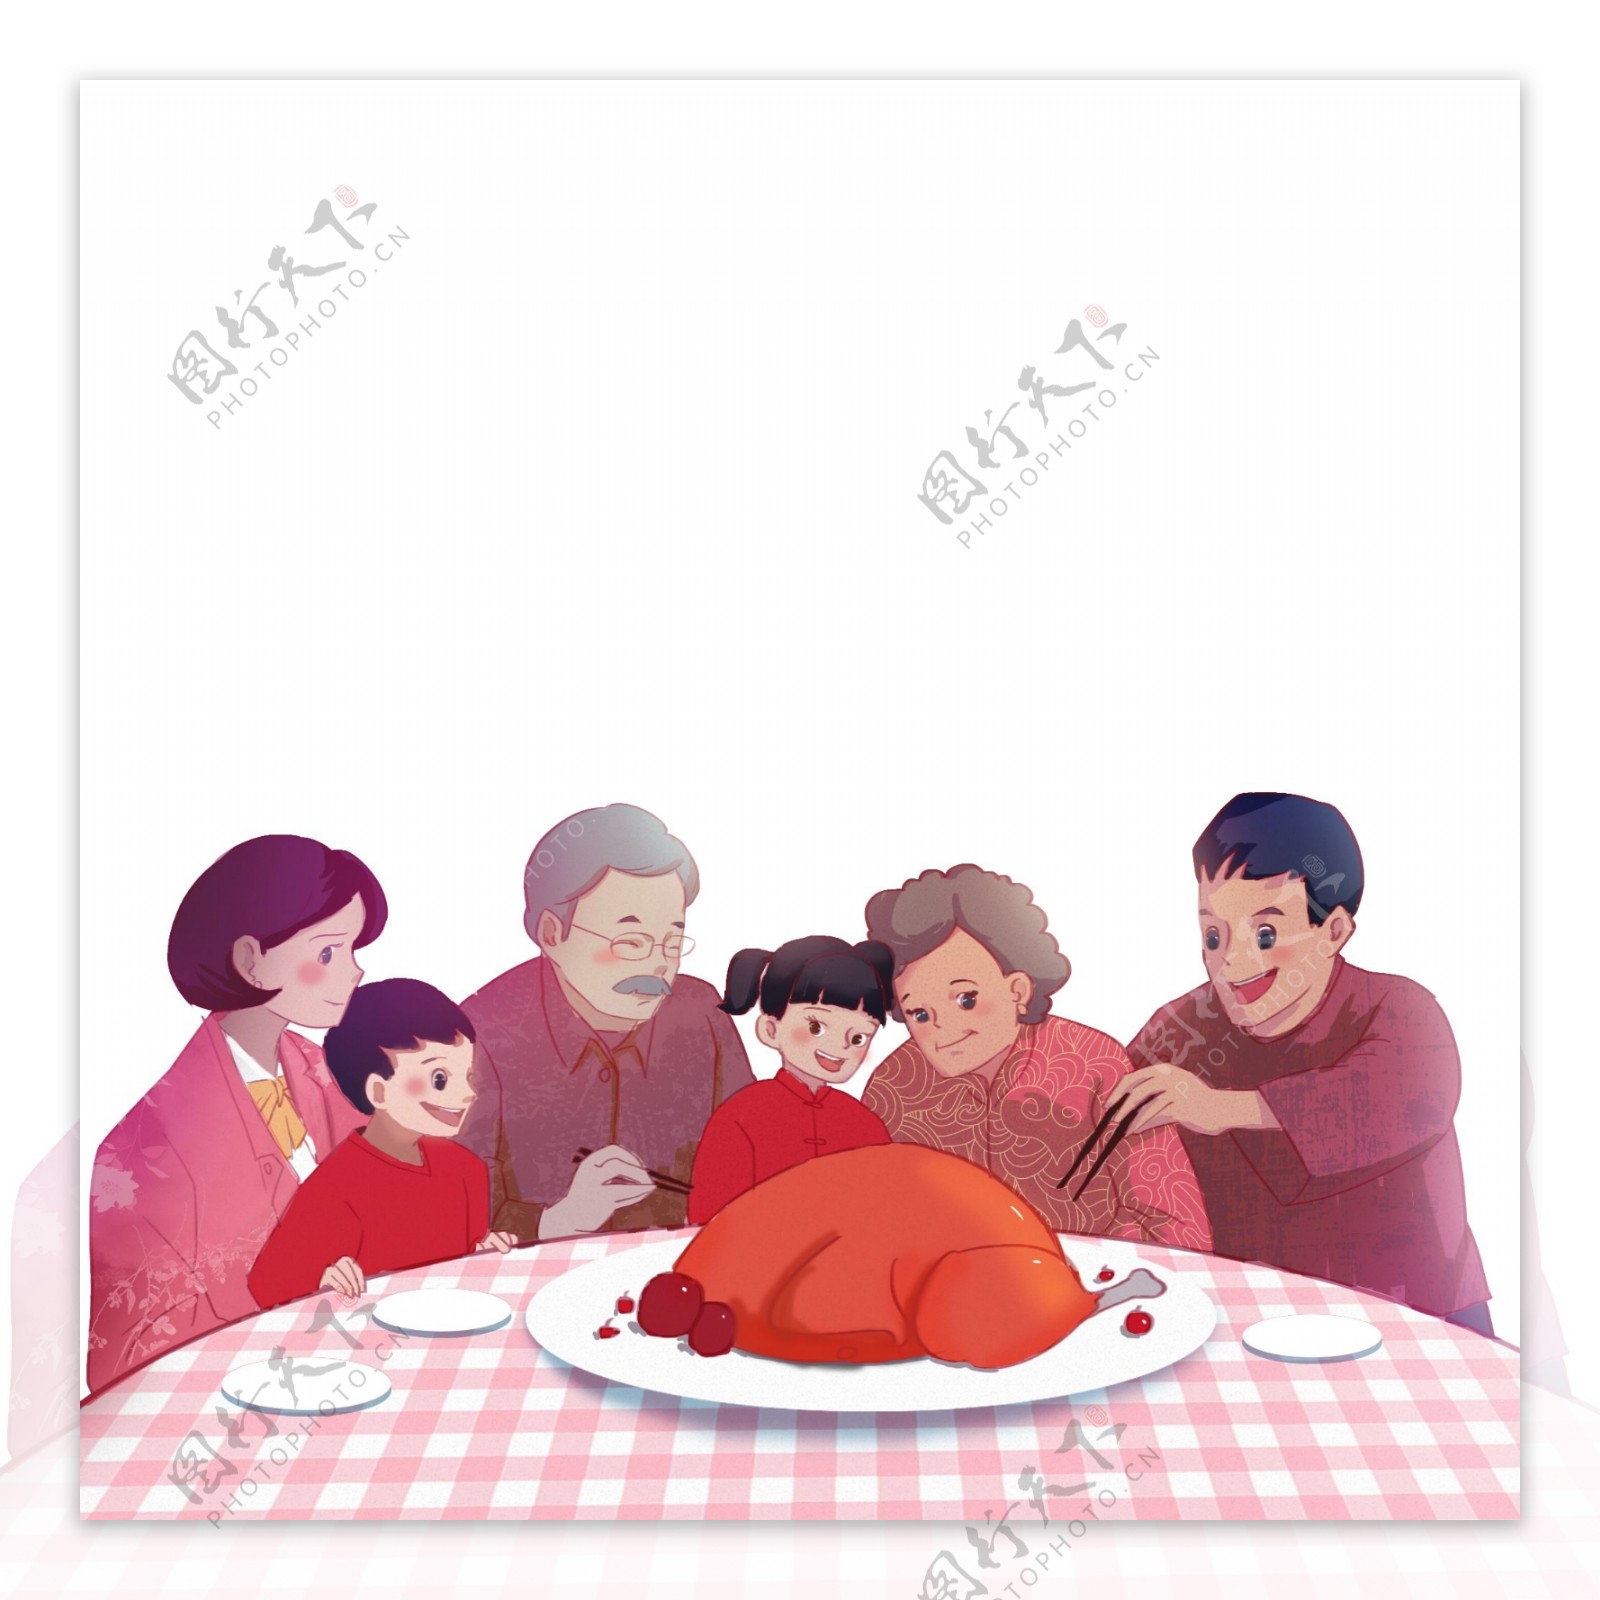 感恩节一家人团聚吃火鸡